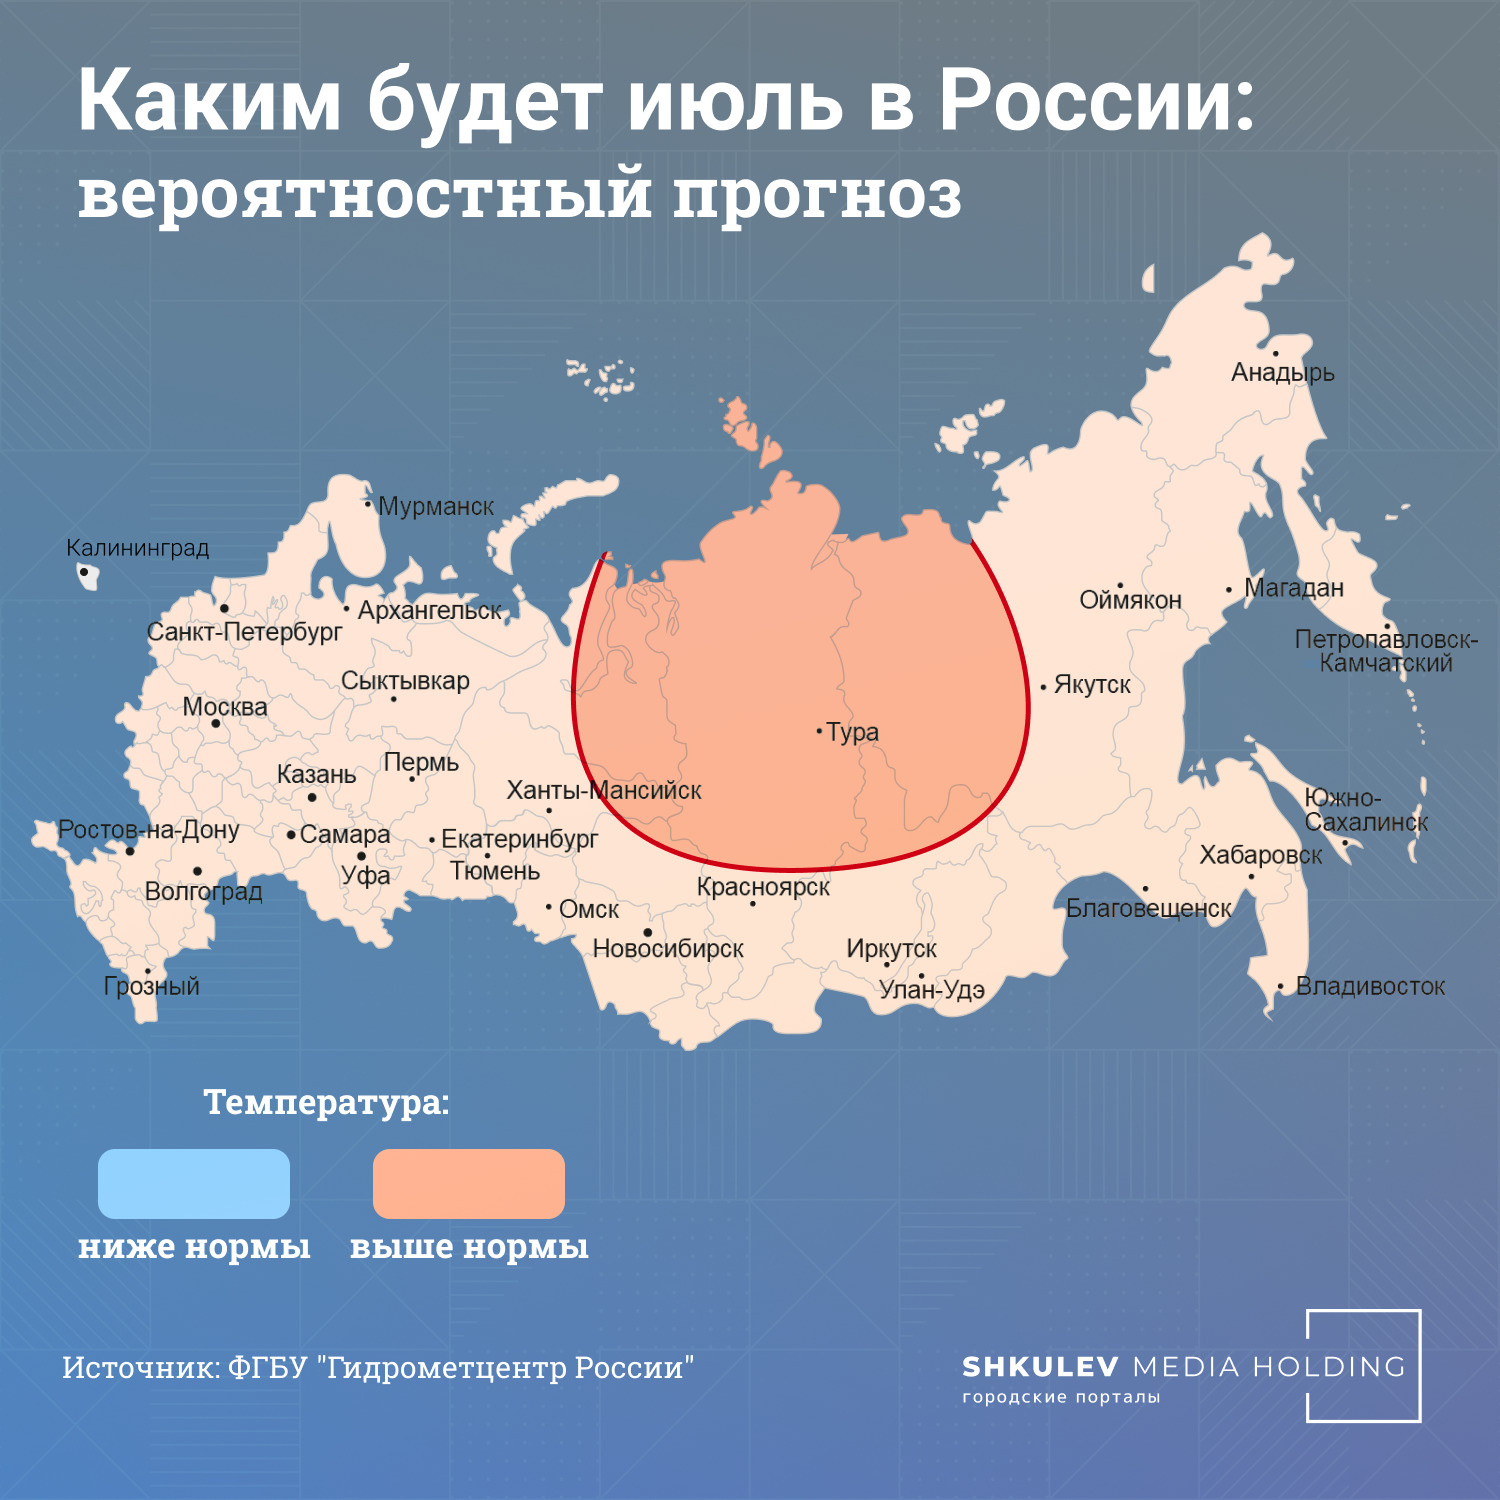 В июле на европейской территории России температура будет держаться около нормы